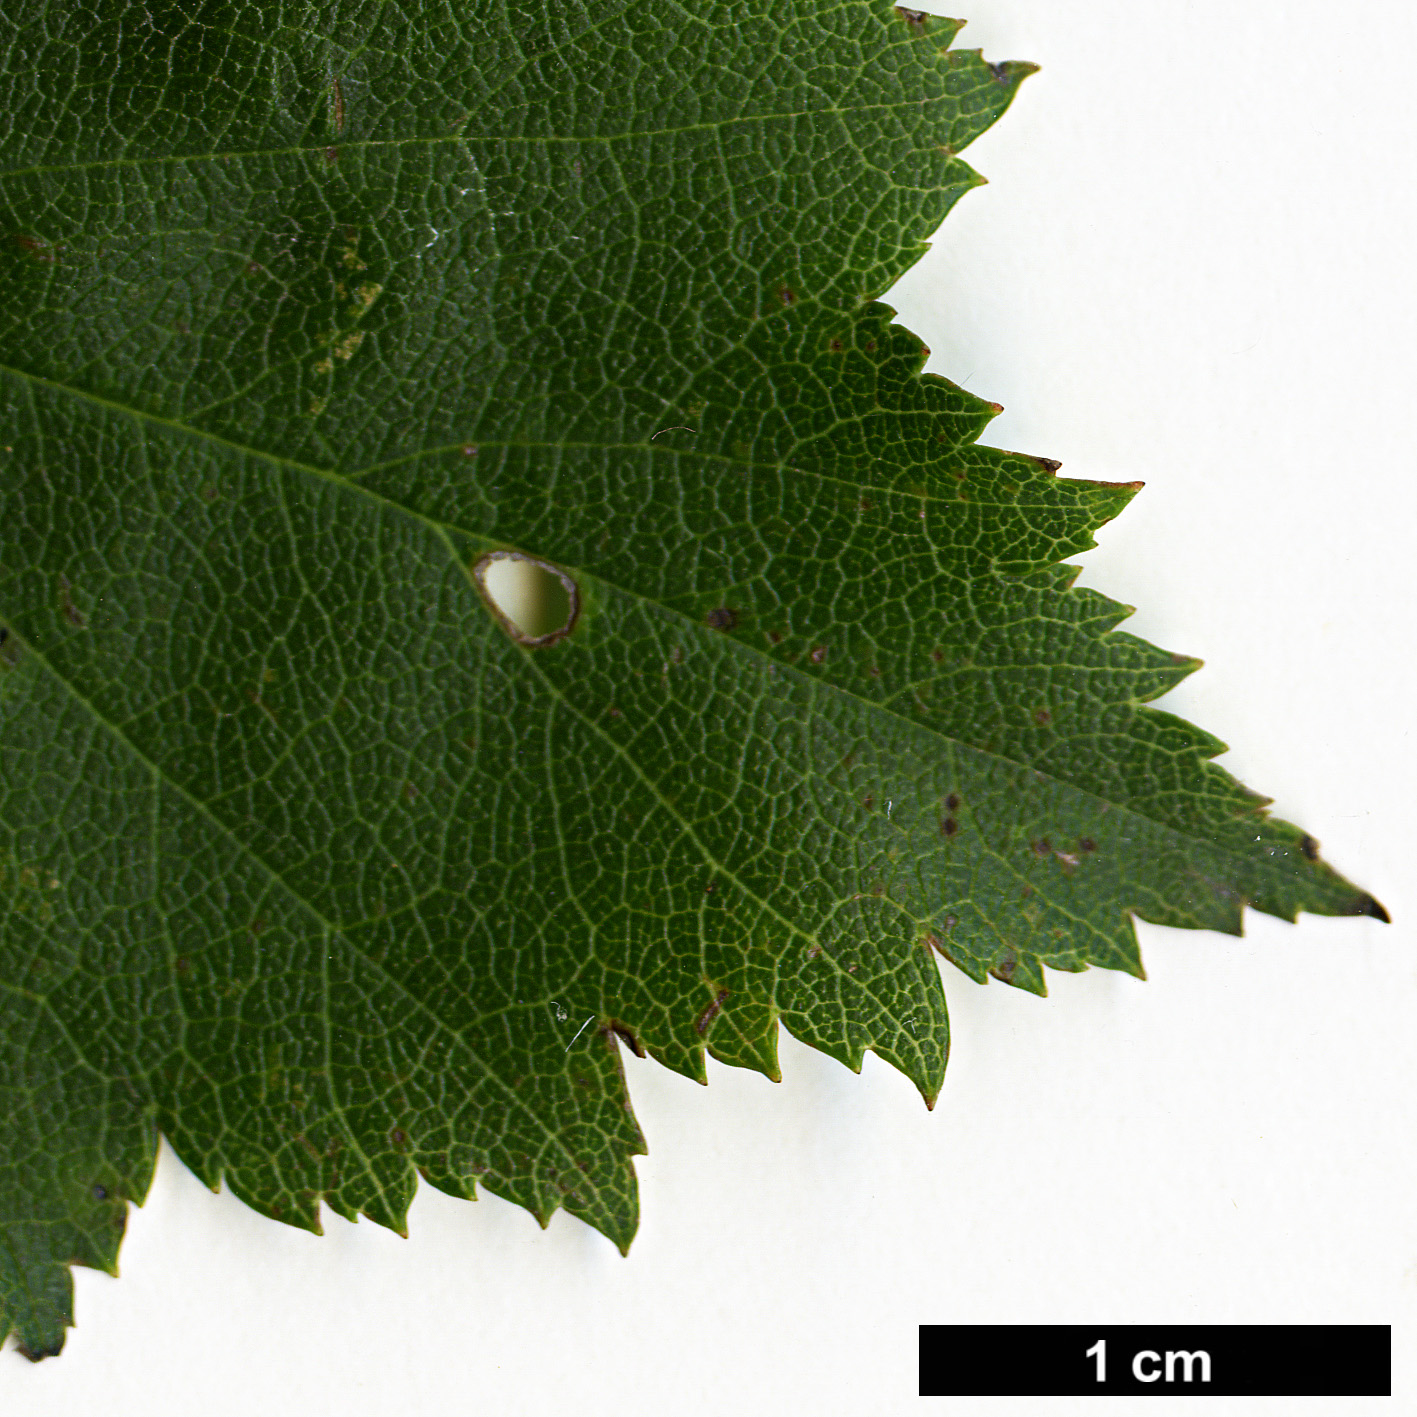 High resolution image: Family: Rosaceae - Genus: Crataegus - Taxon: iracunda